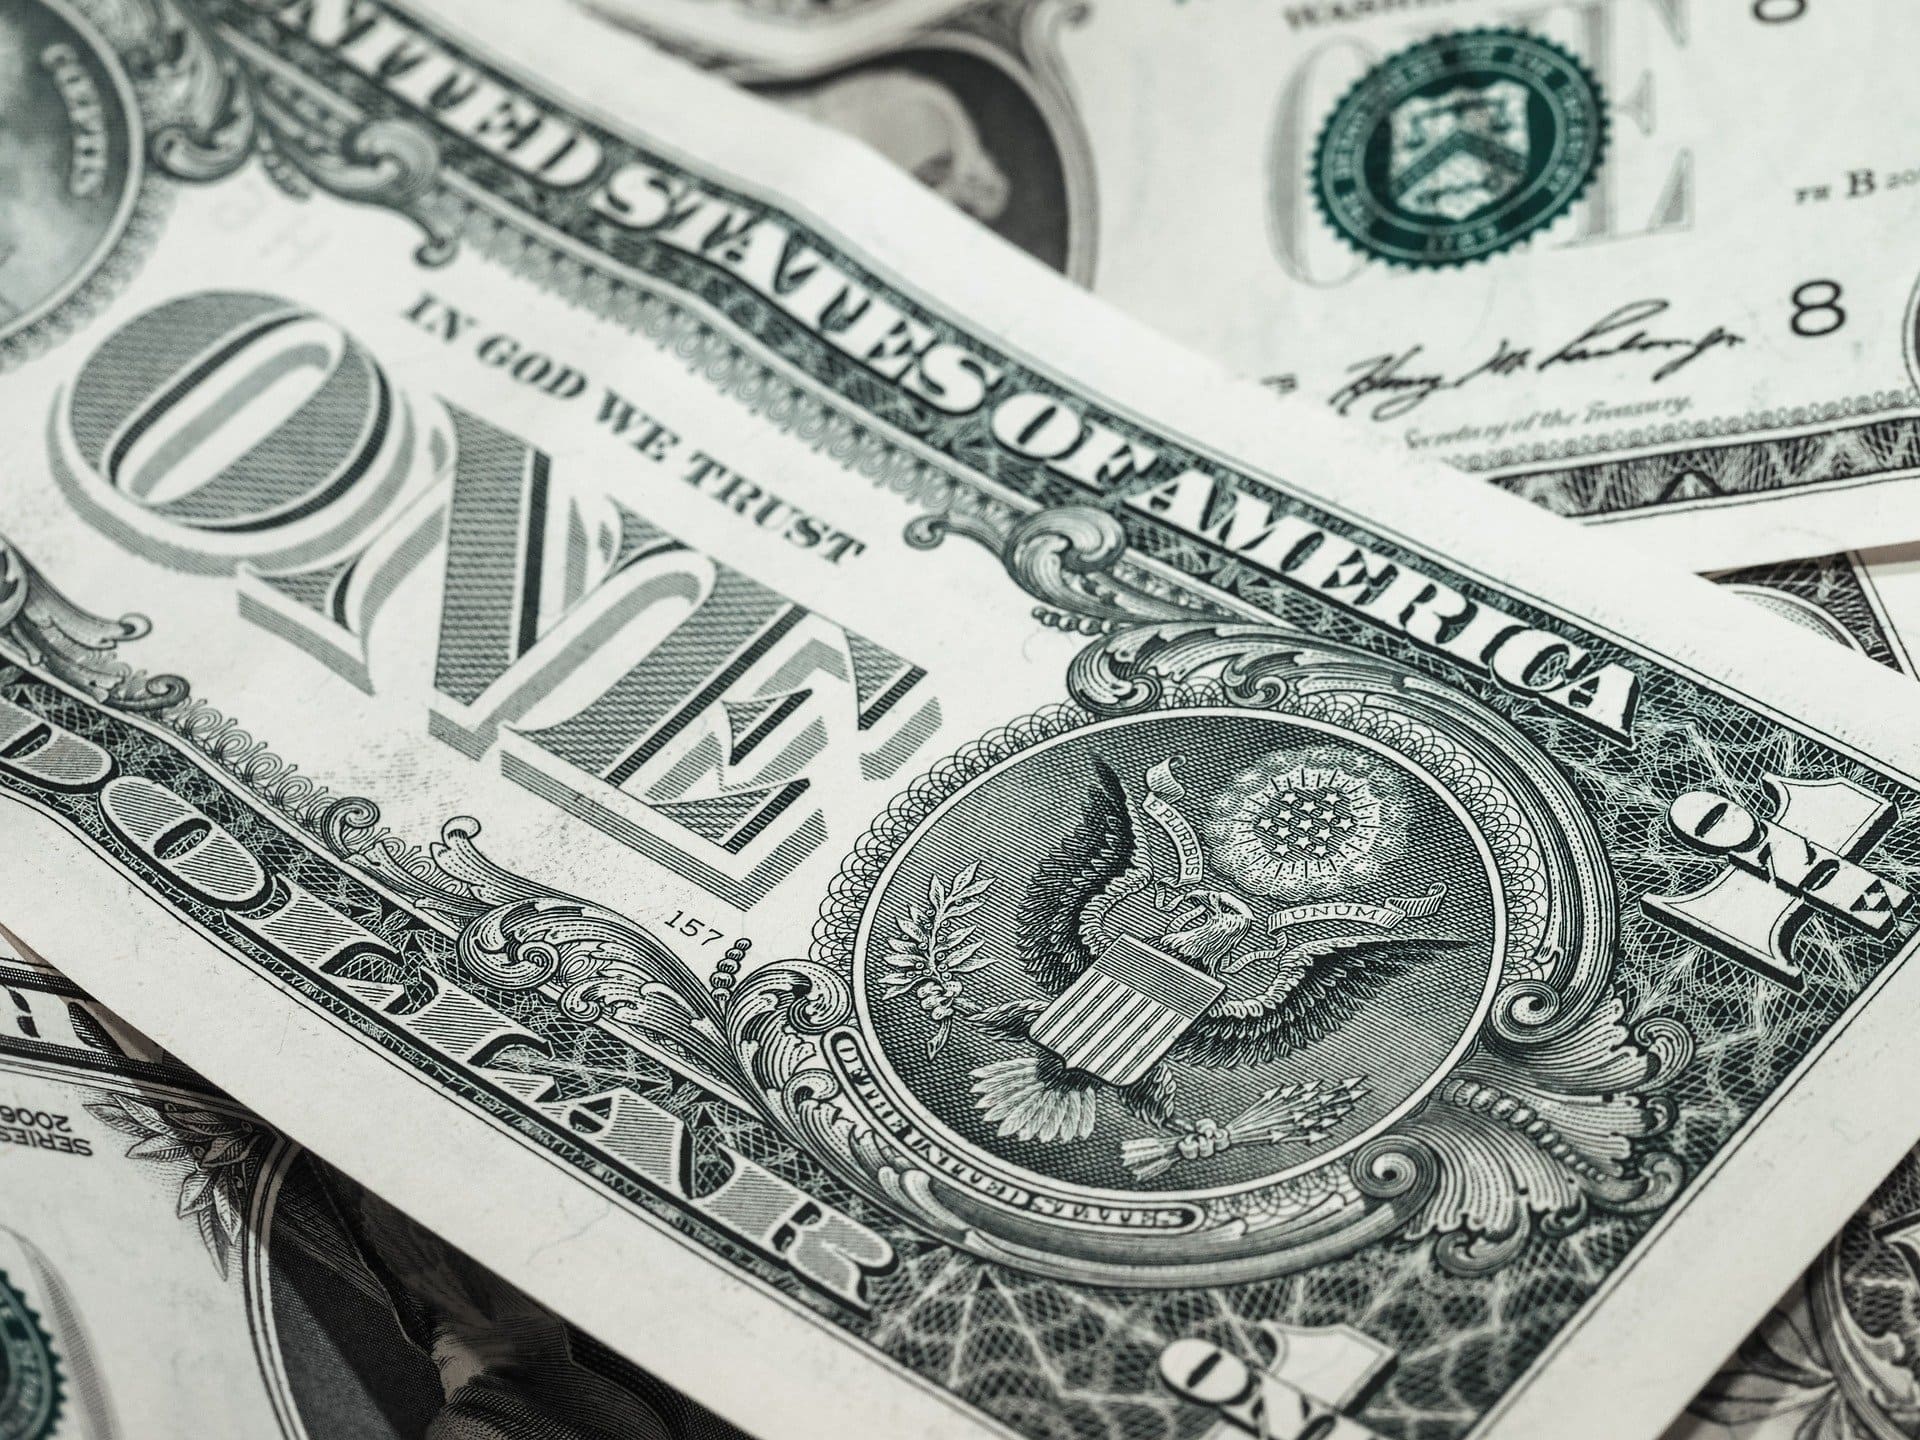 Bank notes | Source: Pixabay 